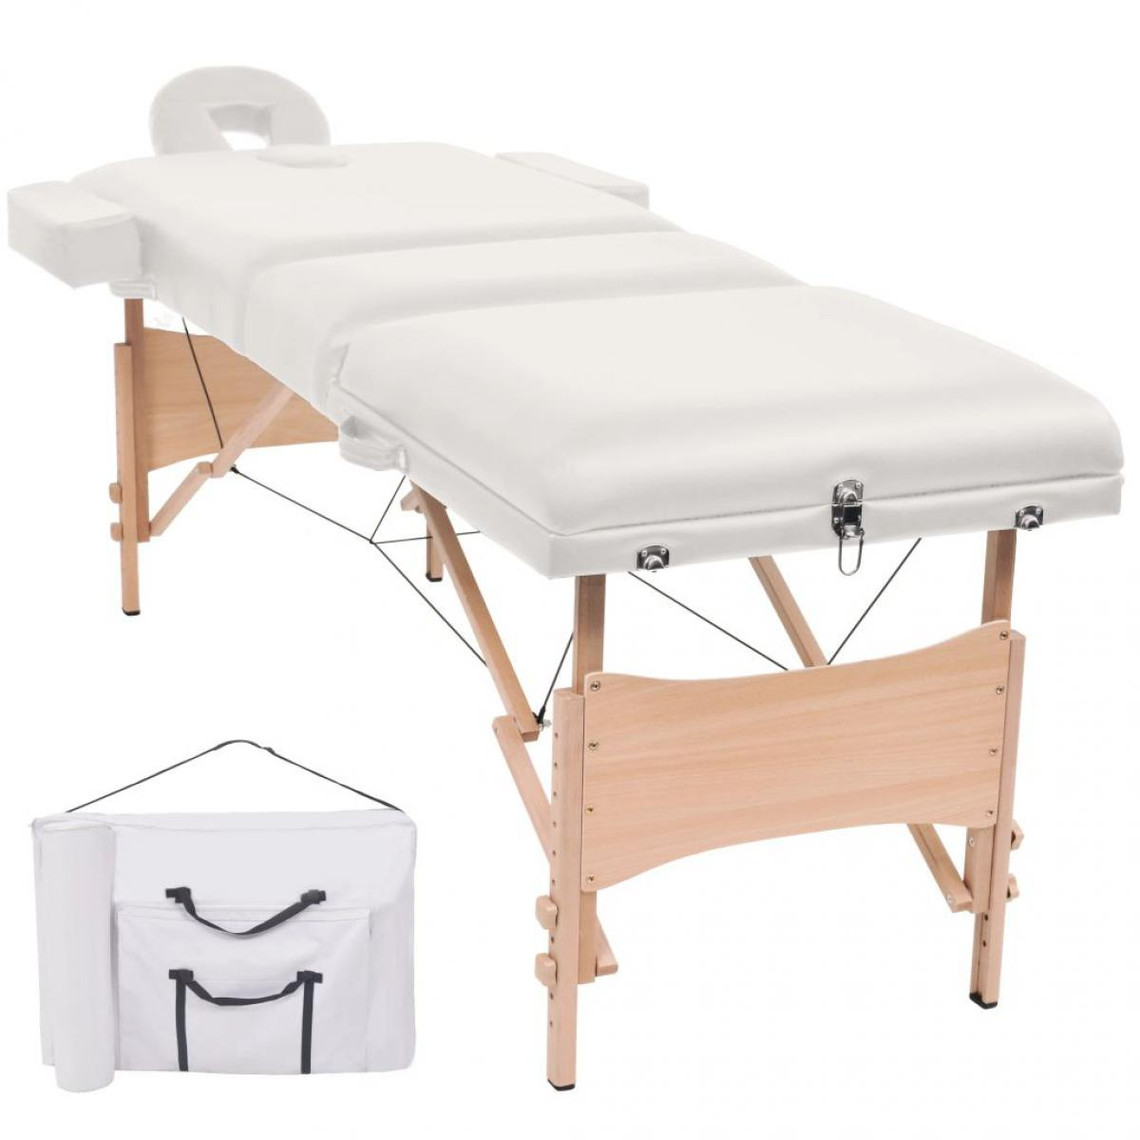 Hucoco Table de massage pliable à 3 zones 10 cm d'épaisseur Blanc - Massage et relaxation - Tables de massage - Unisexe - Blanc